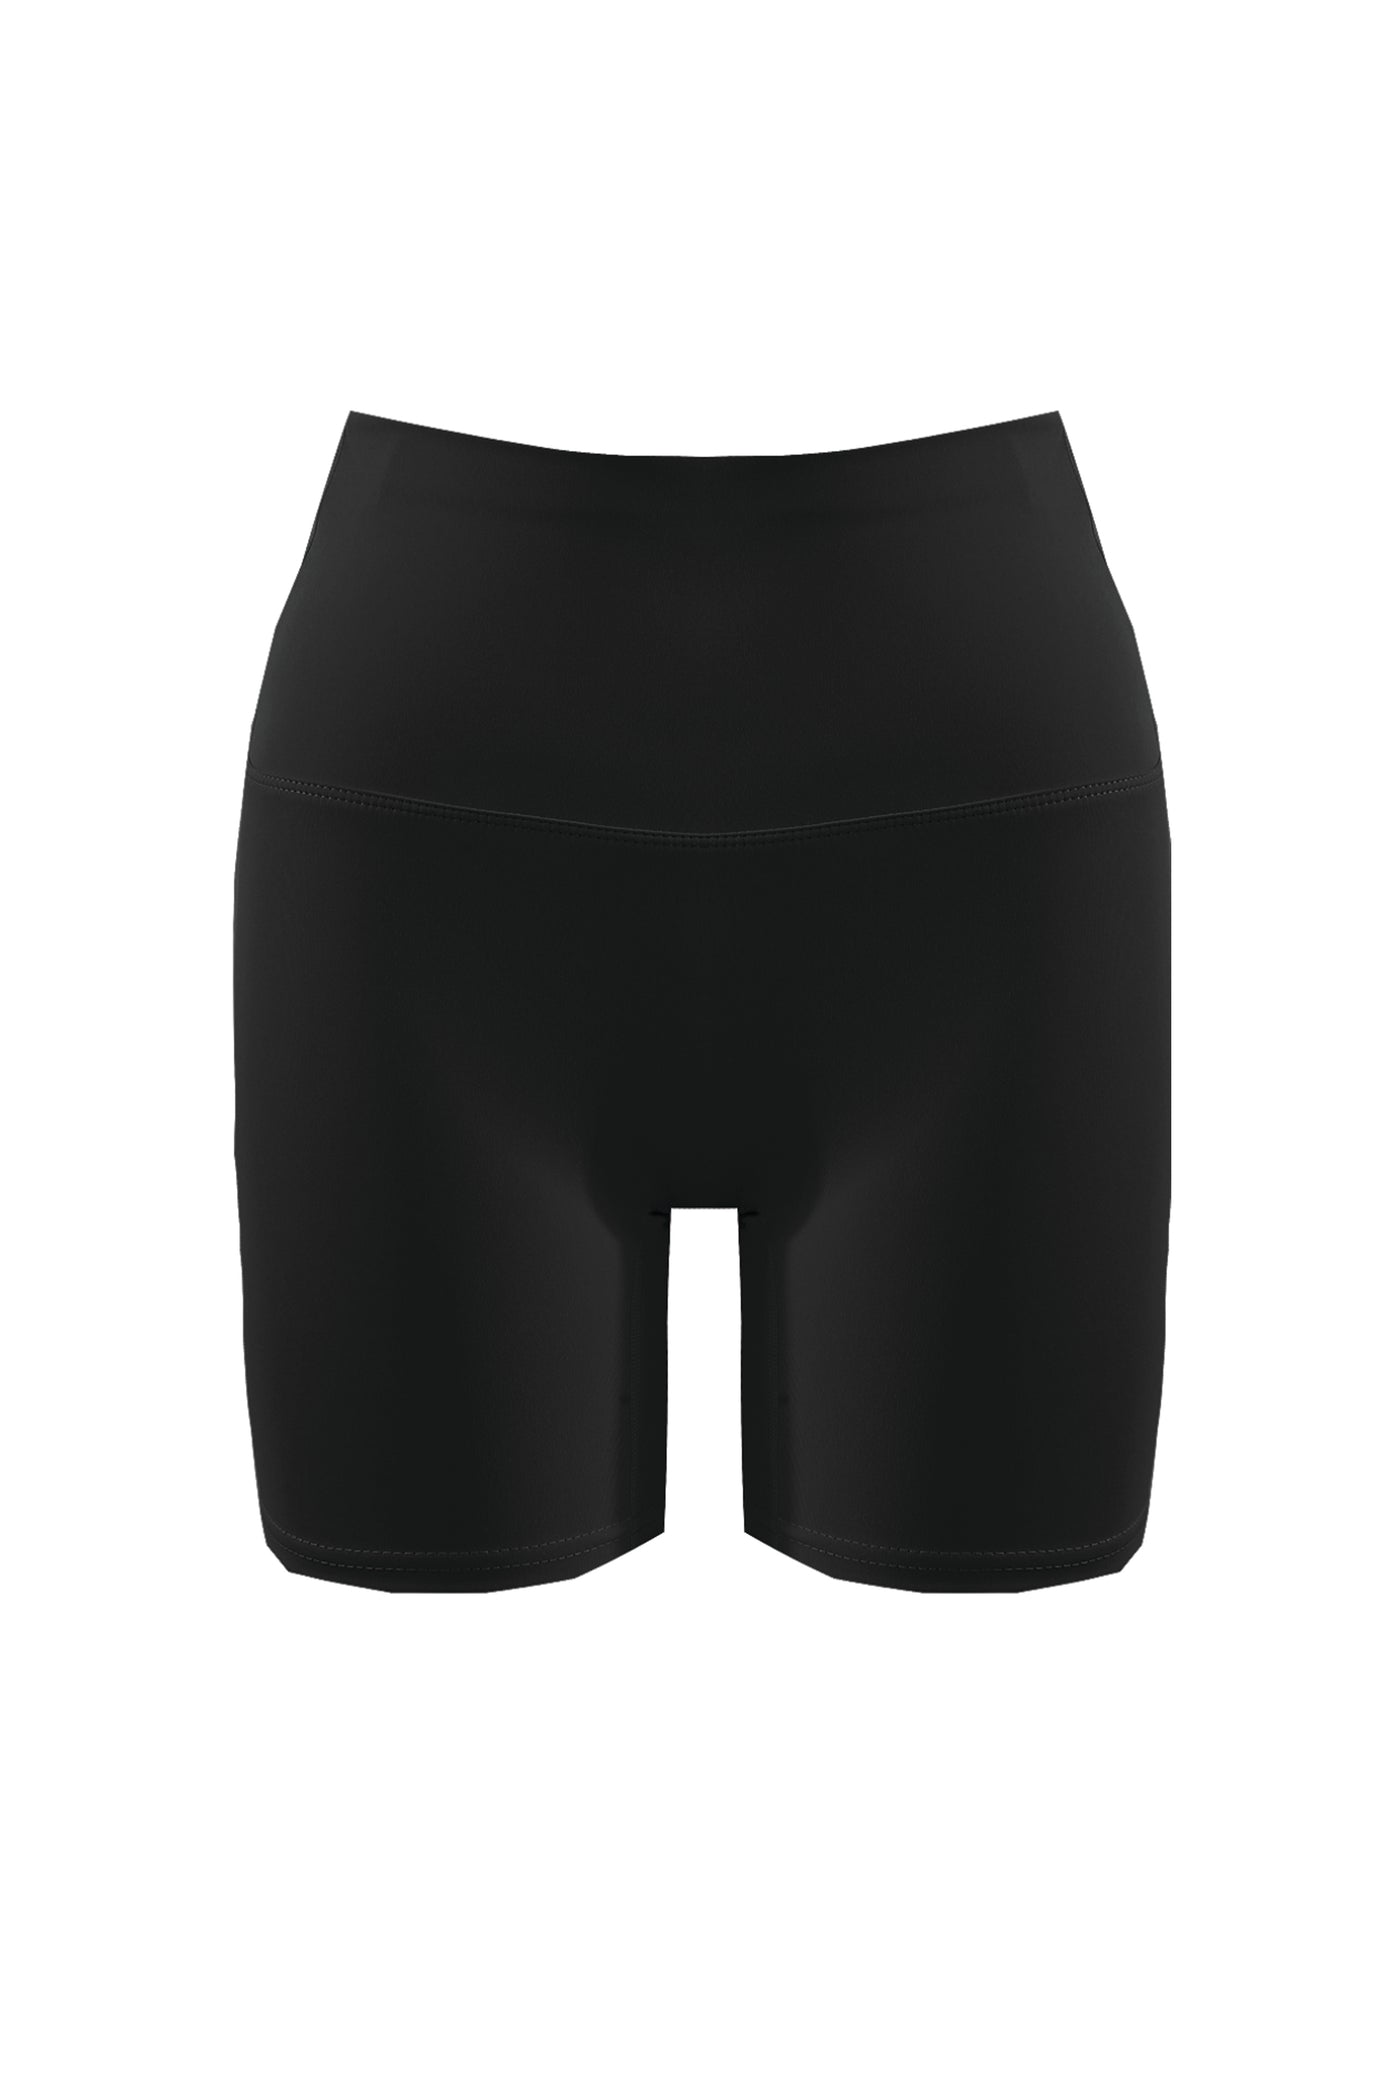 Slimming Cycling Shorts - Black